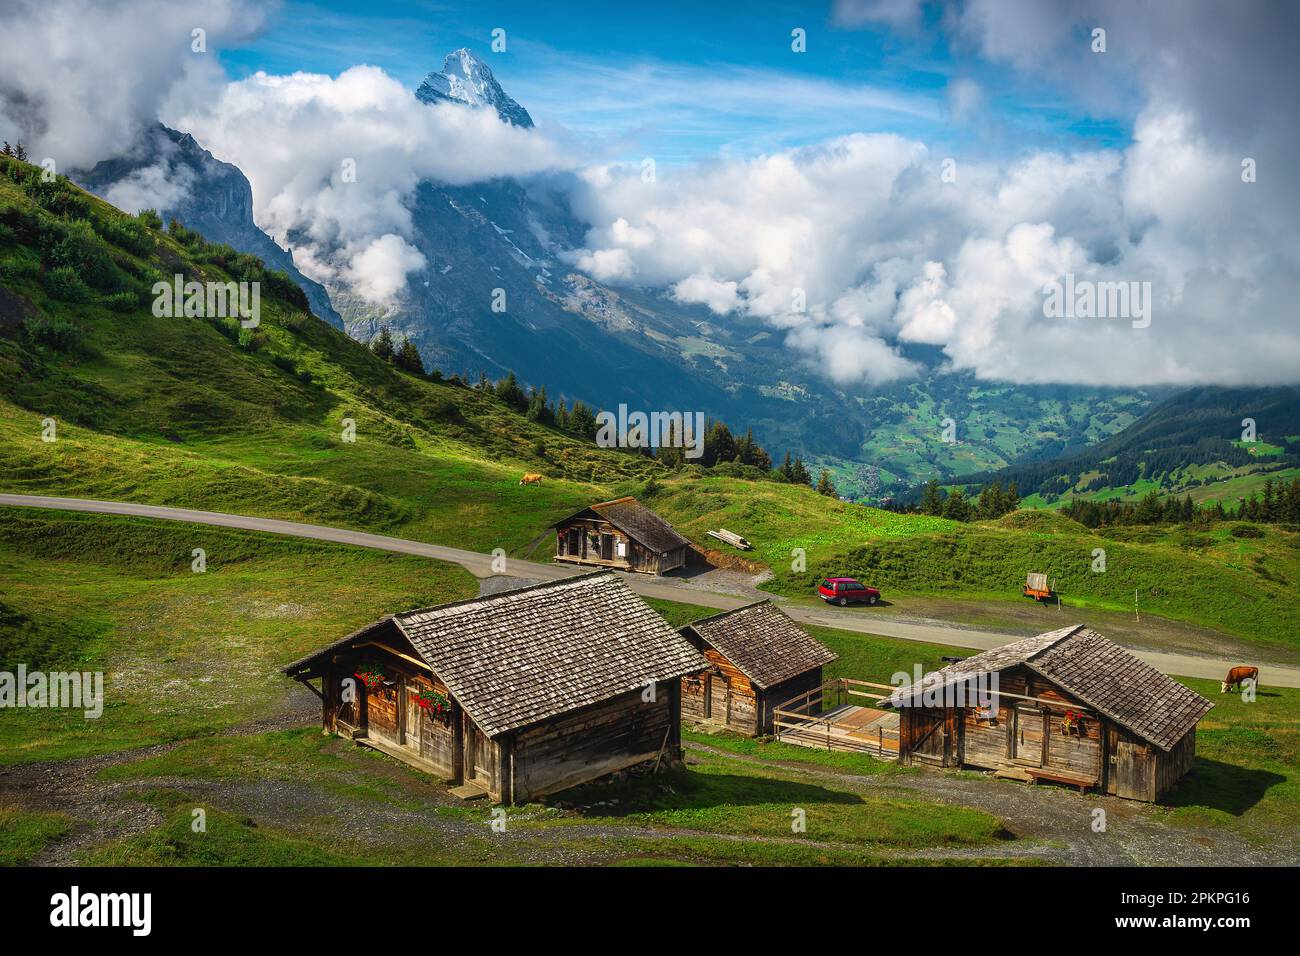 Randonnée pittoresque et emplacement de voyage, fermes rurales en bois sur les prairies verdoyantes alpines. Pic emblématique de l'Eiger en arrière-plan, Grindelwald, Bernois OBE Banque D'Images